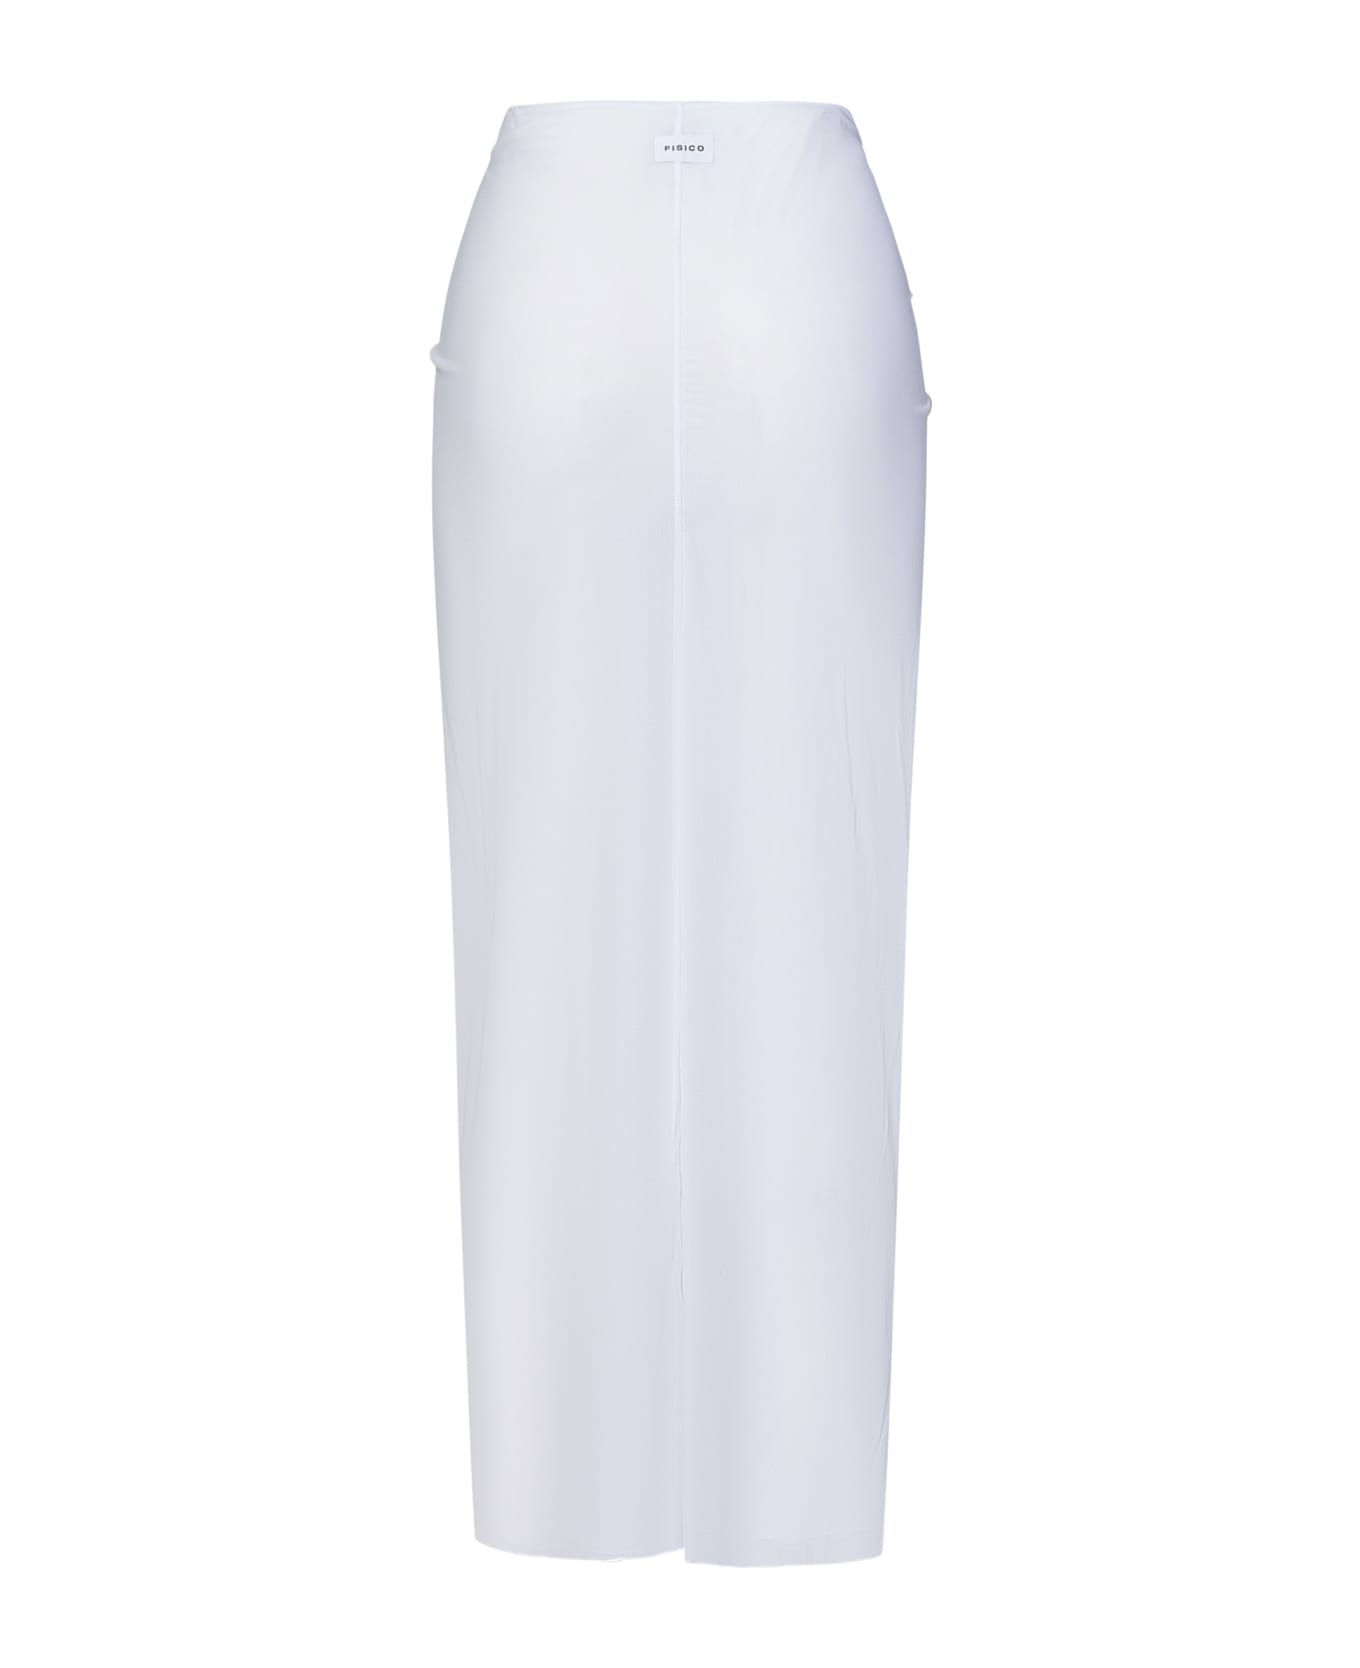 Fisico - Cristina Ferrari Fisico Skirt - White